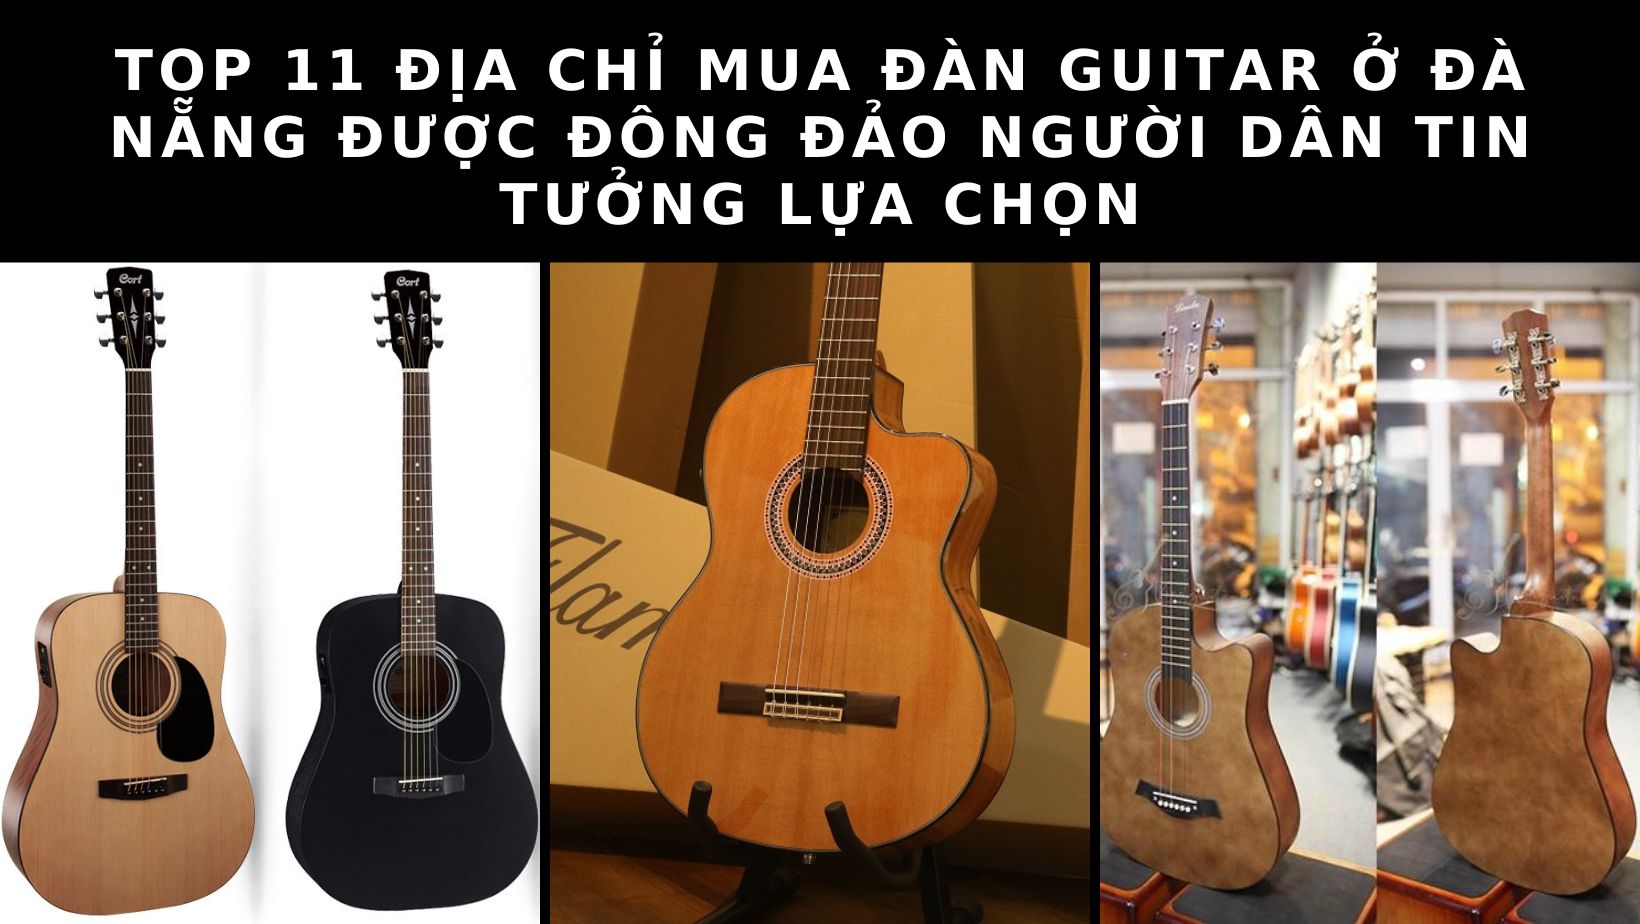 Top 11 địa chỉ mua đàn guitar ở Đà Nẵng giá rẻ, chất lượng